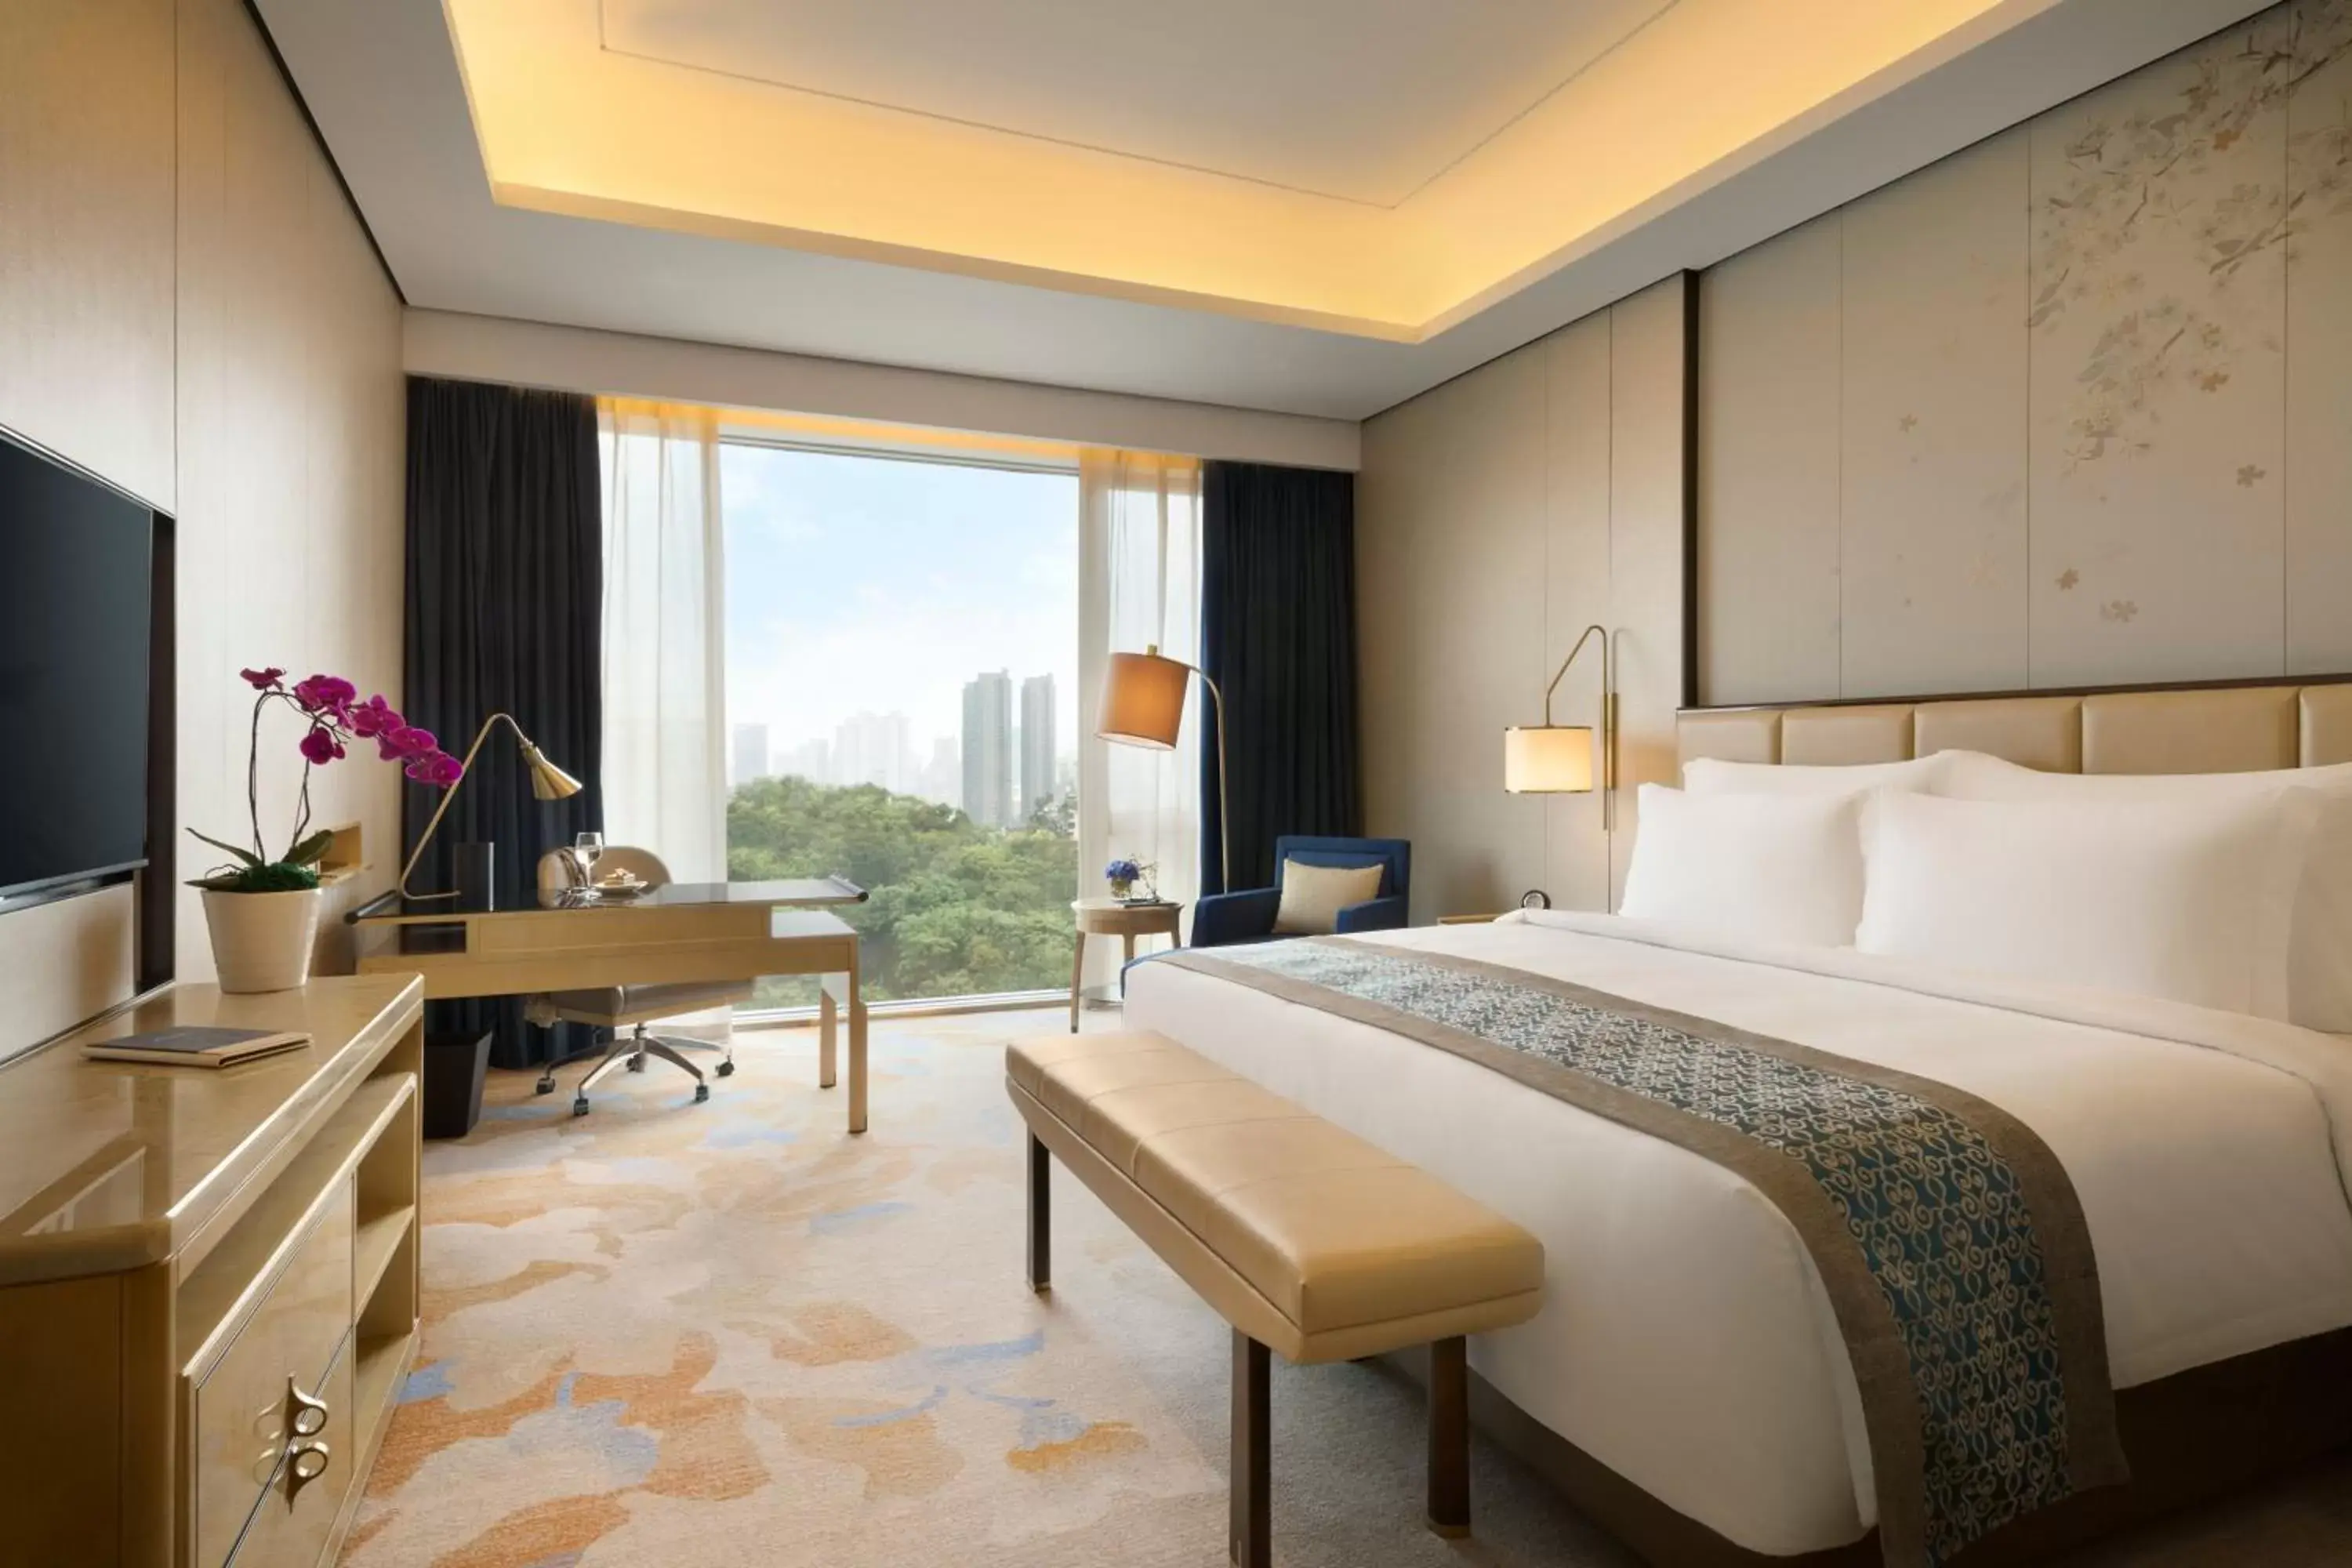 Bedroom, Room Photo in Kempinski Hotel Fuzhou